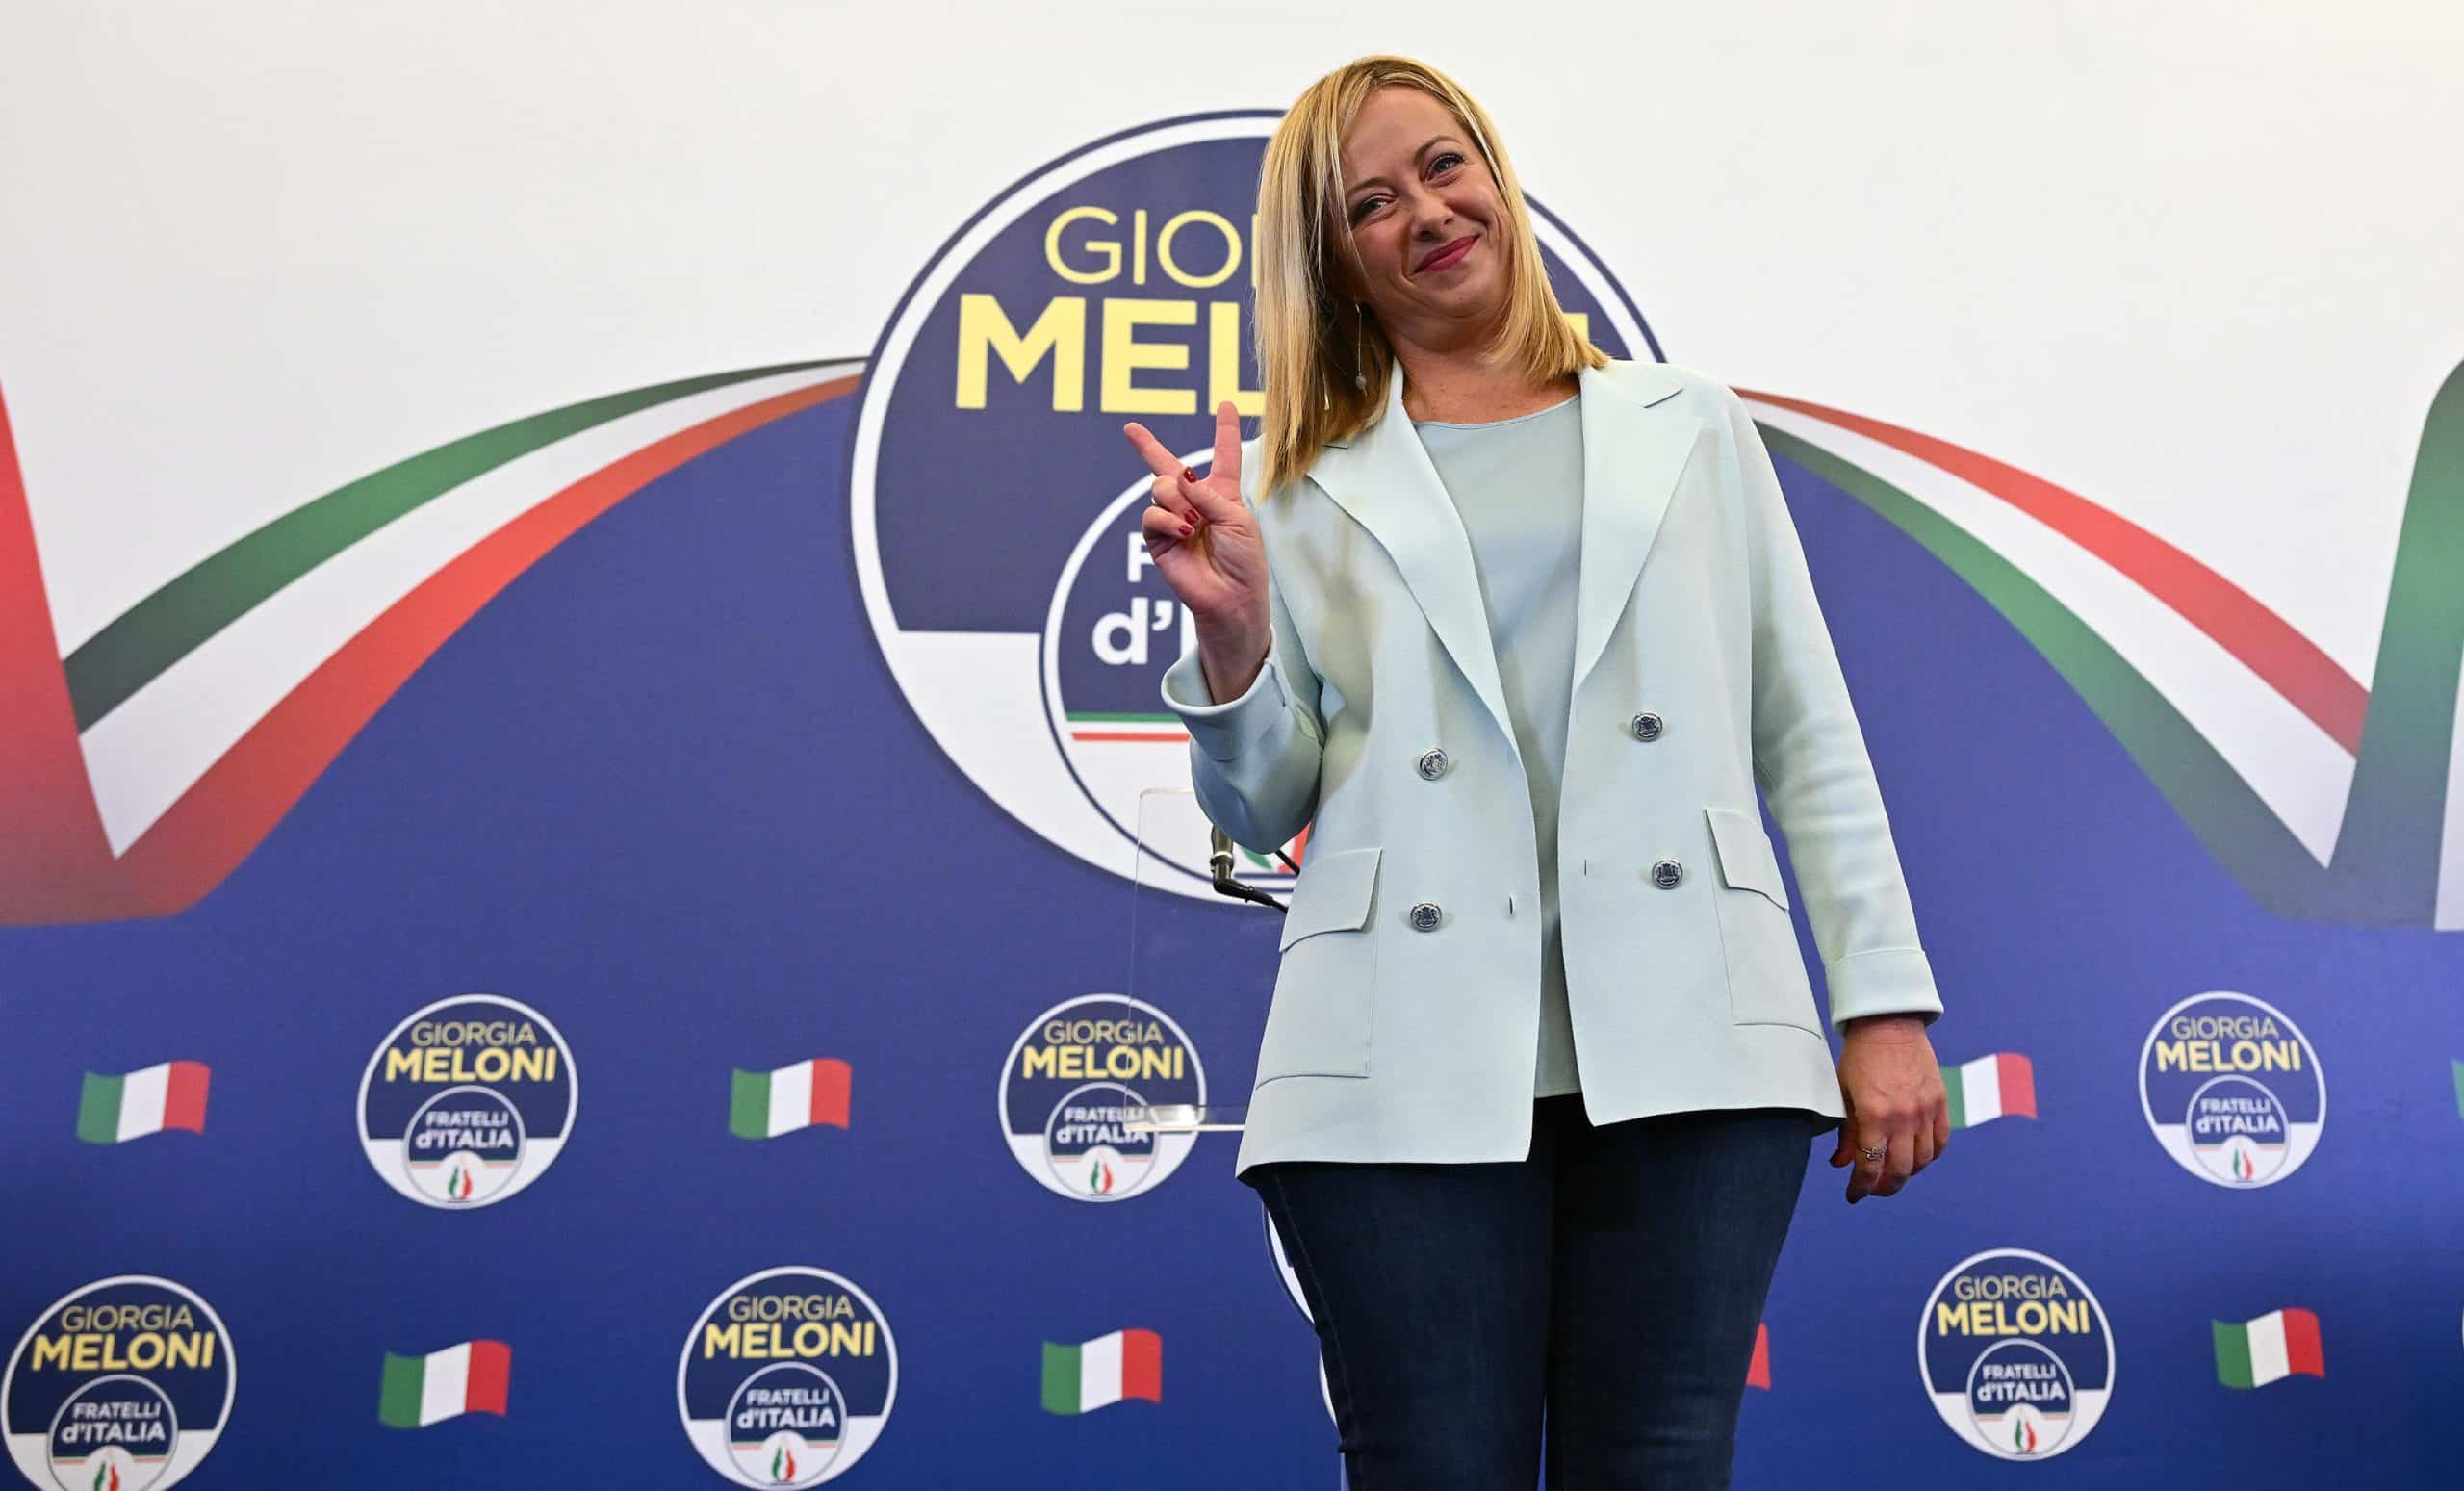 La leader di Fratelli d'Italia Giorgia Meloni sarà la prima donna premier in Italia